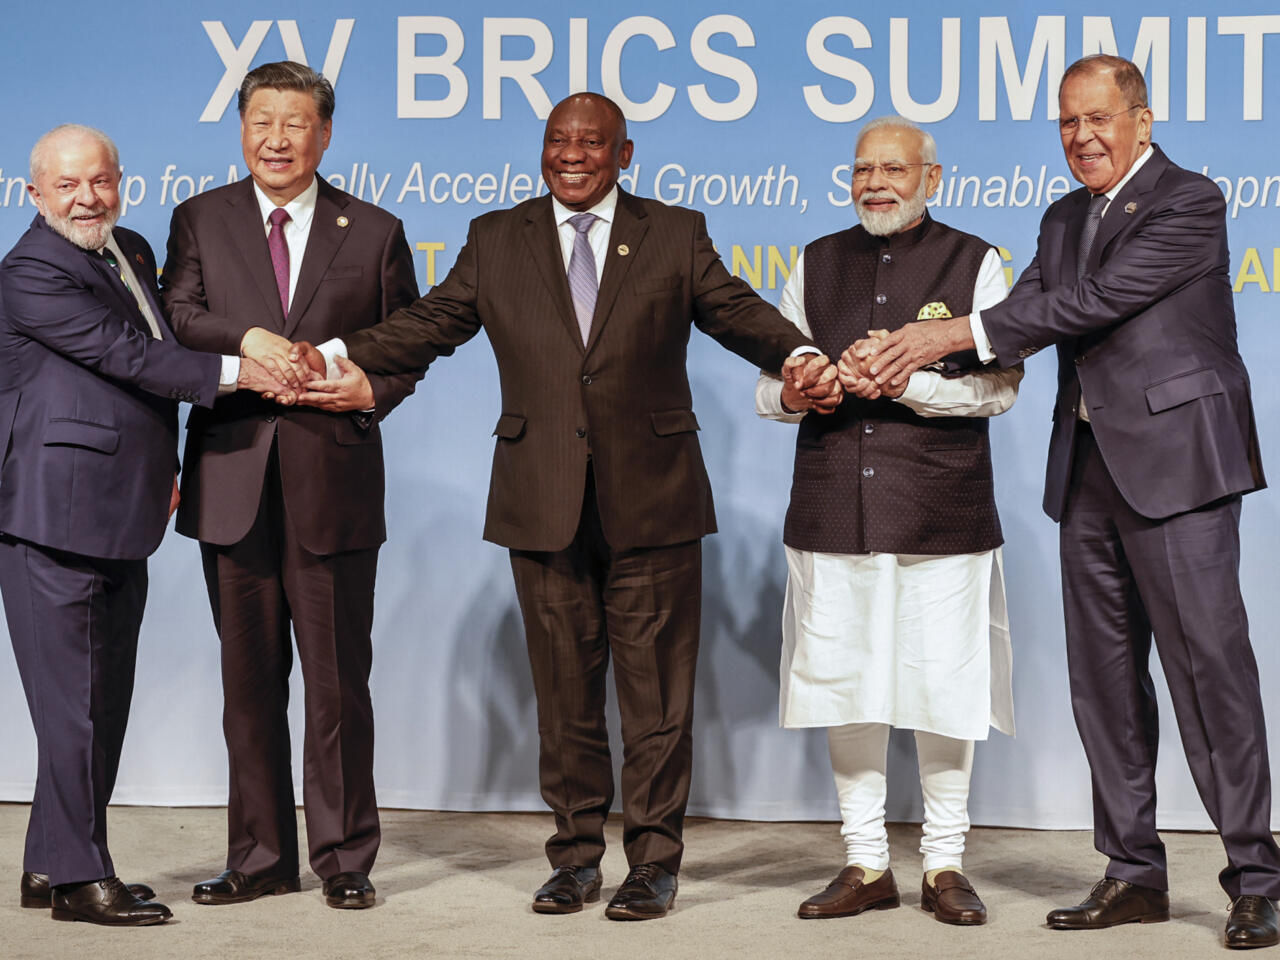 15η Σύνοδος BRICS: Διακήρυξη 20 σημείων της Συνόδου Κορυφής